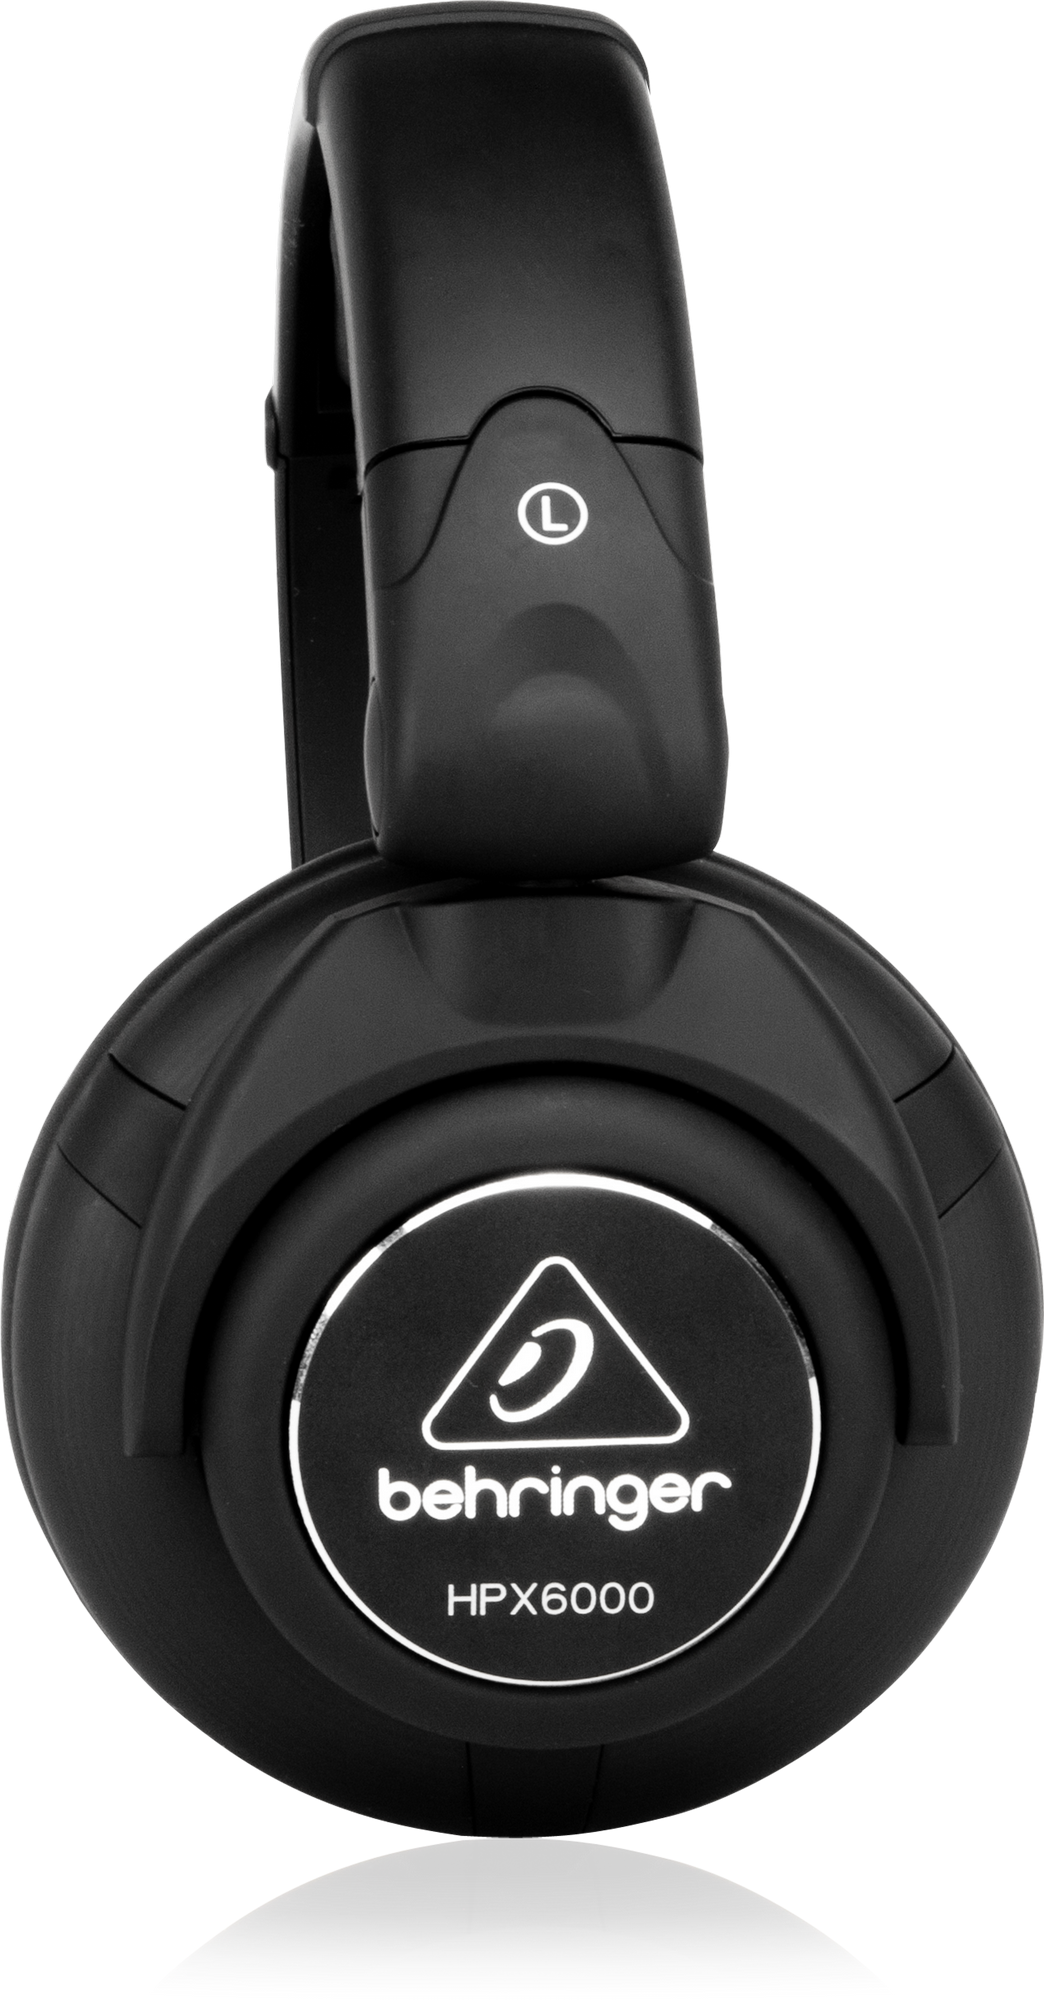 Behringer | Product | HPX6000